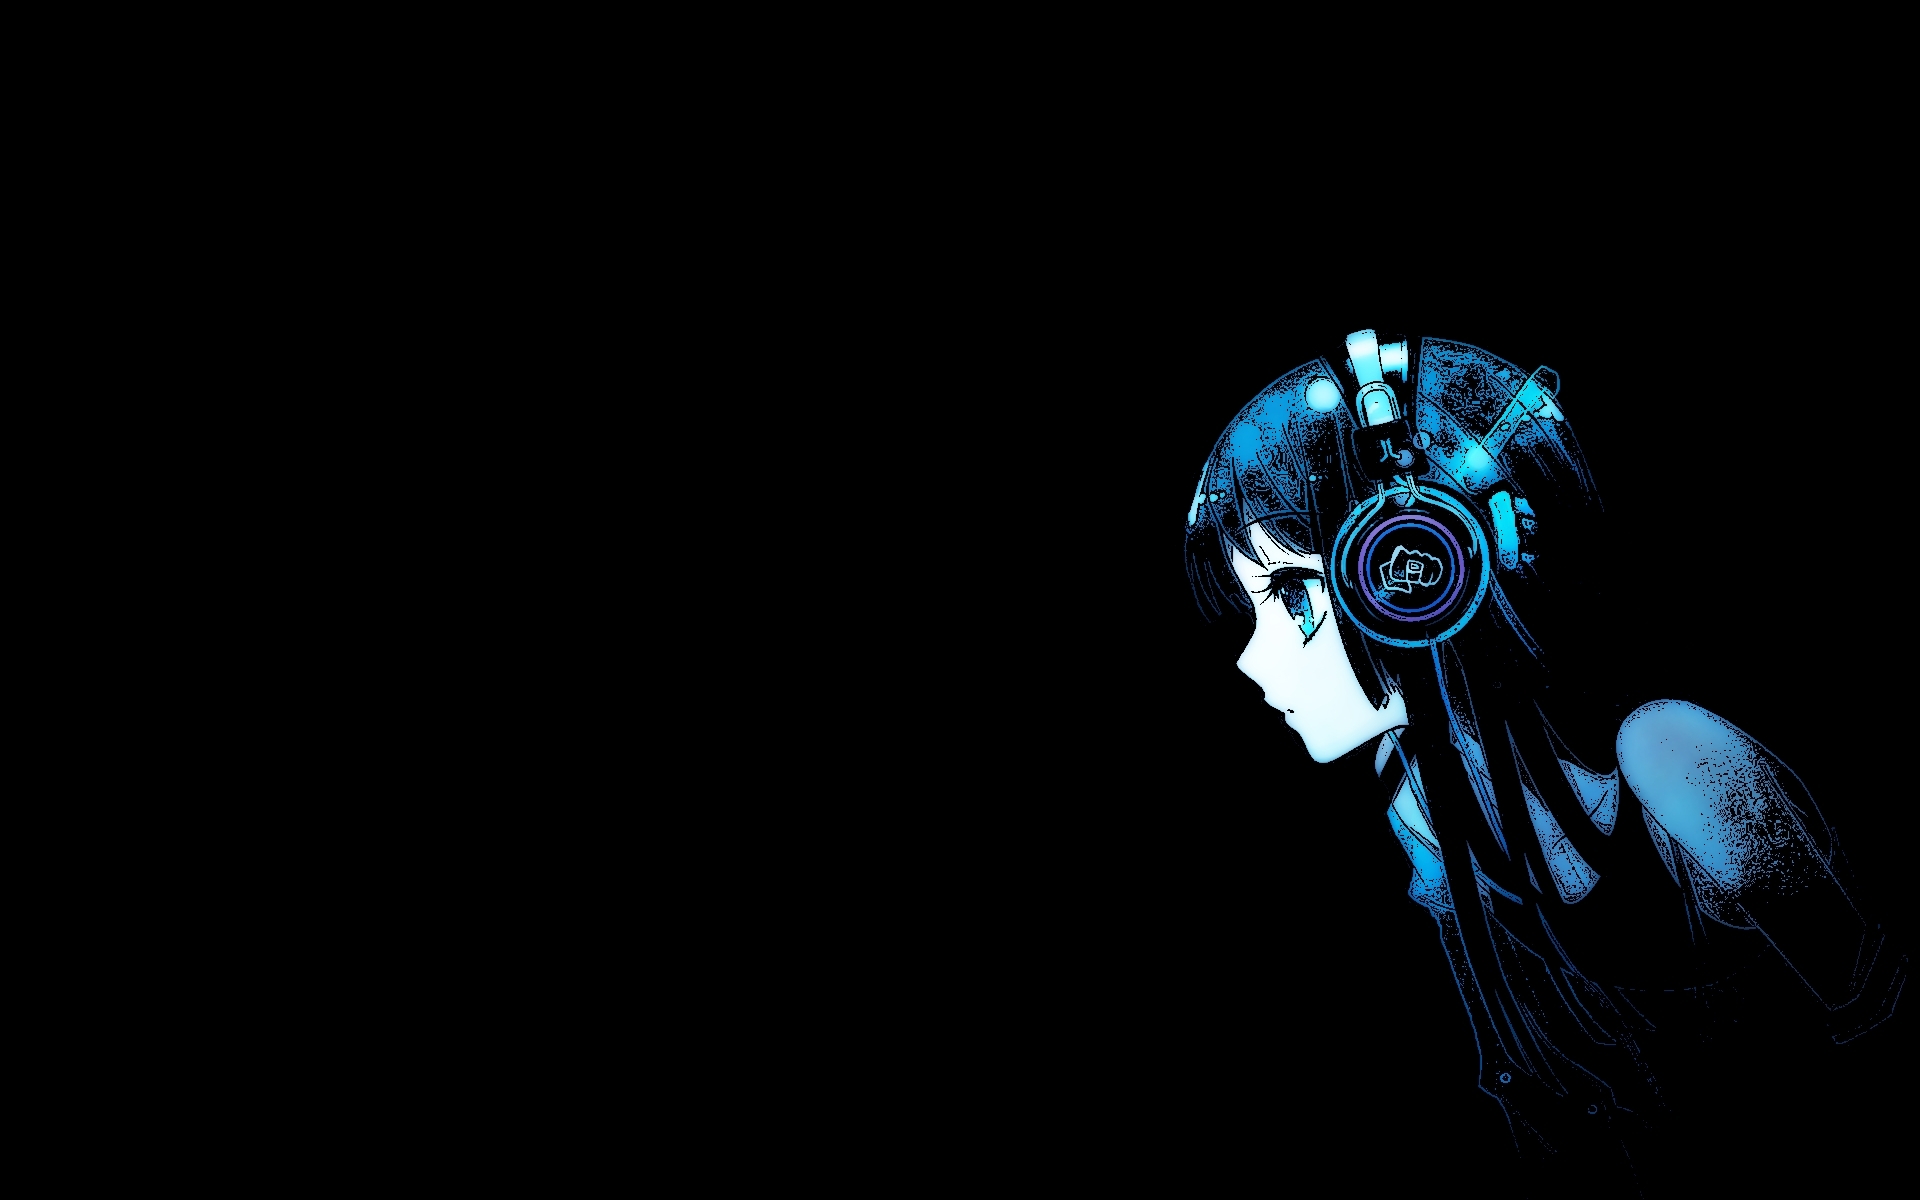 Mio Akiyama wearing headphones against a vibrant background.